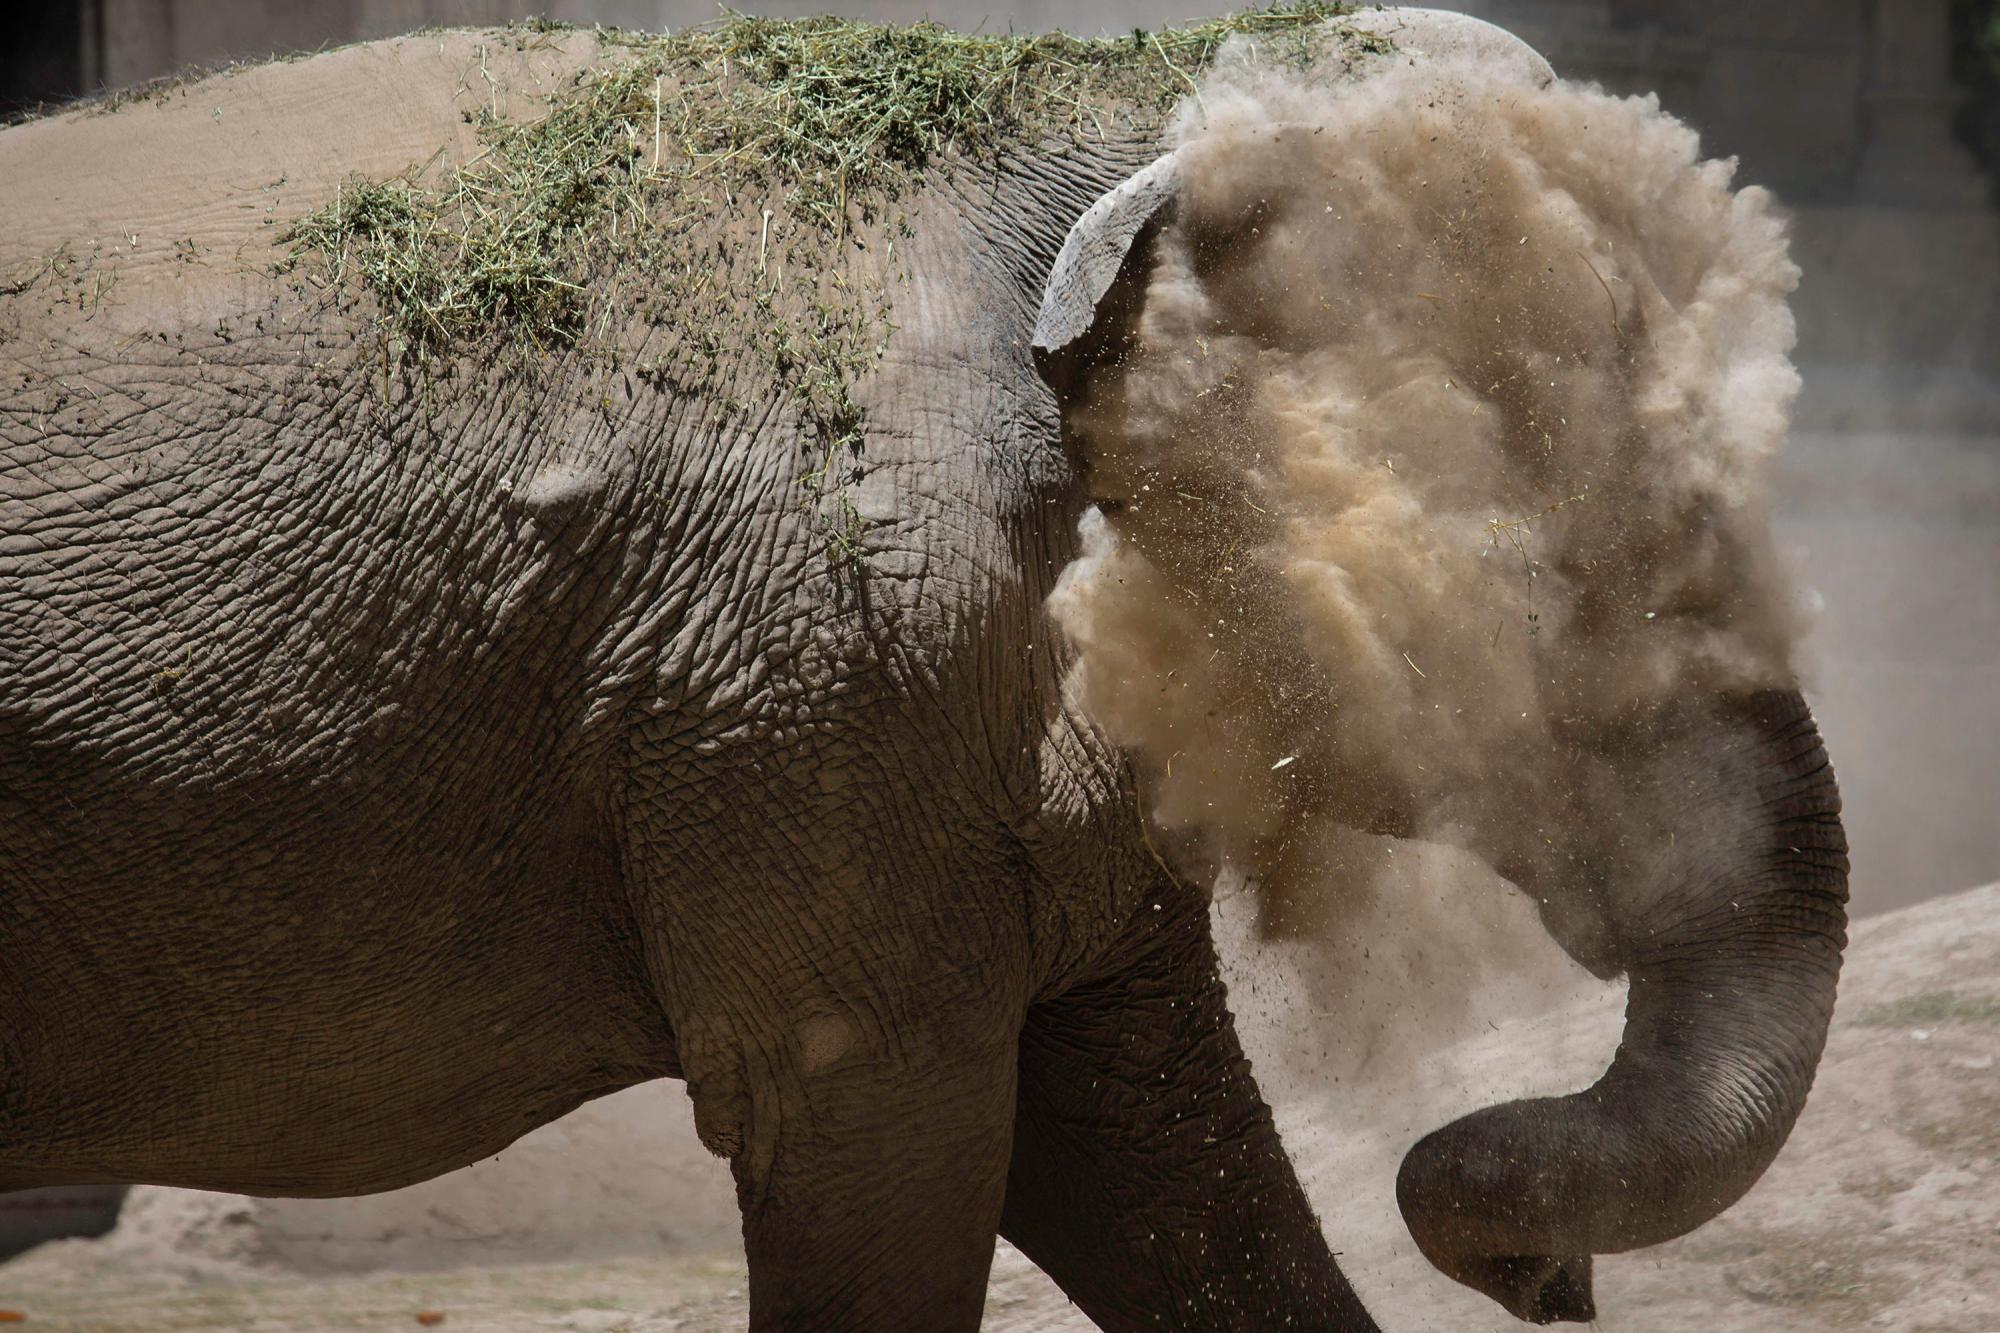 En esta imagen, publicada esta semana pero tomada el 13 de enero de 2020,  Mara, una ejemplar de elefante asiático, se arroja polvo al rostro en el antiguo zoo conocido como Ecopark, en Buenos Aires, Argentina. Mara dejará el recinto y será trasladada a un santuario de elefantes en Brasil, pero antes de su viaje al país vecino, que se espera para el mes de marzo, la elefanta, de 55 años, se está entrenando para prepararse para su confinamiento durante el viaje de 2.500 kilómetros por carretera, que durará entre dos y tres días. (AP Foto/Daniel Jayo)